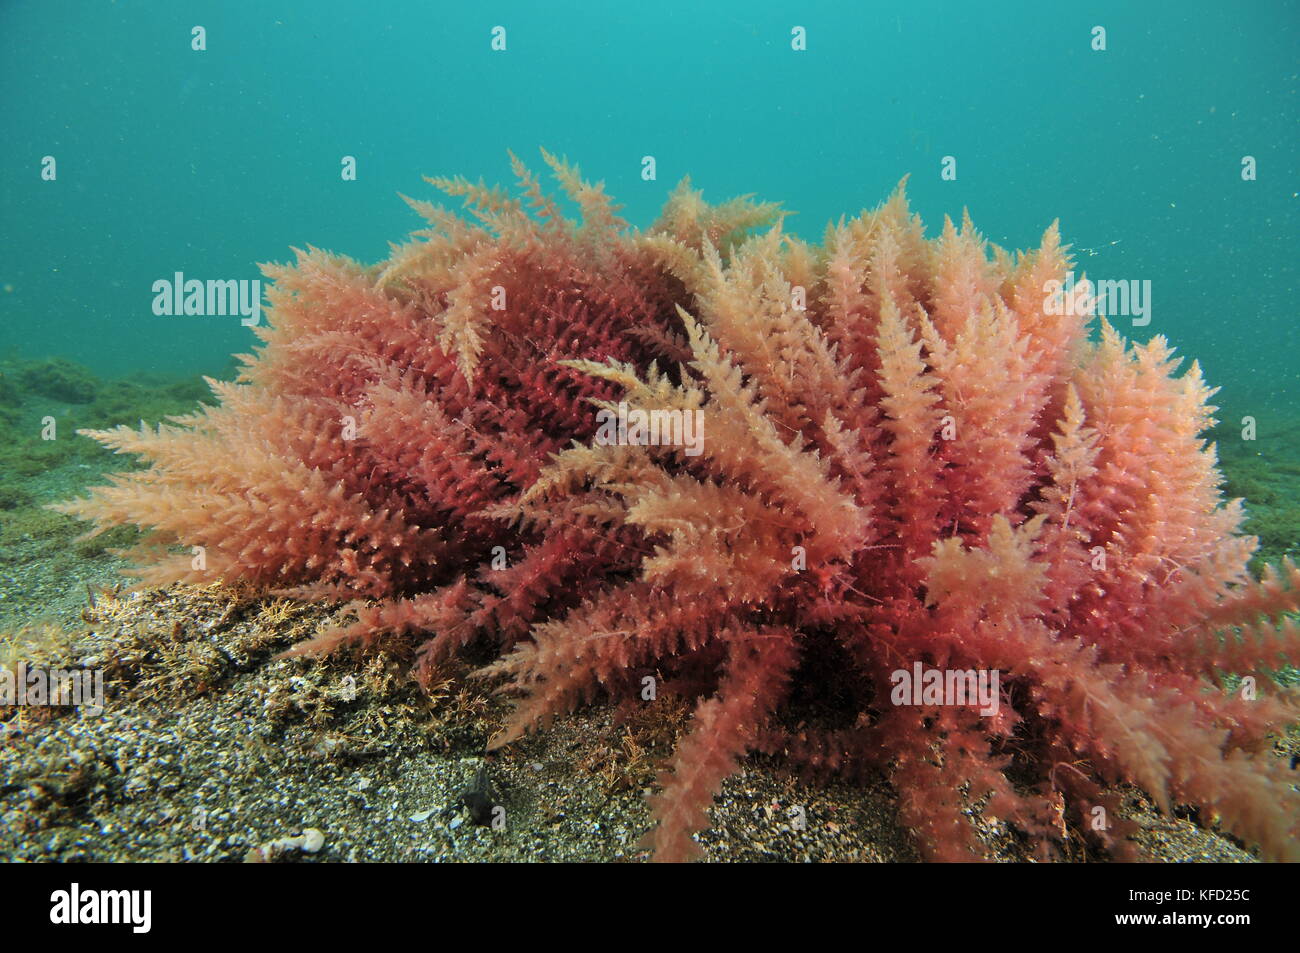 Vista cercana del alga roja arbustos en mar plano inferior de arena gruesa. Foto de stock